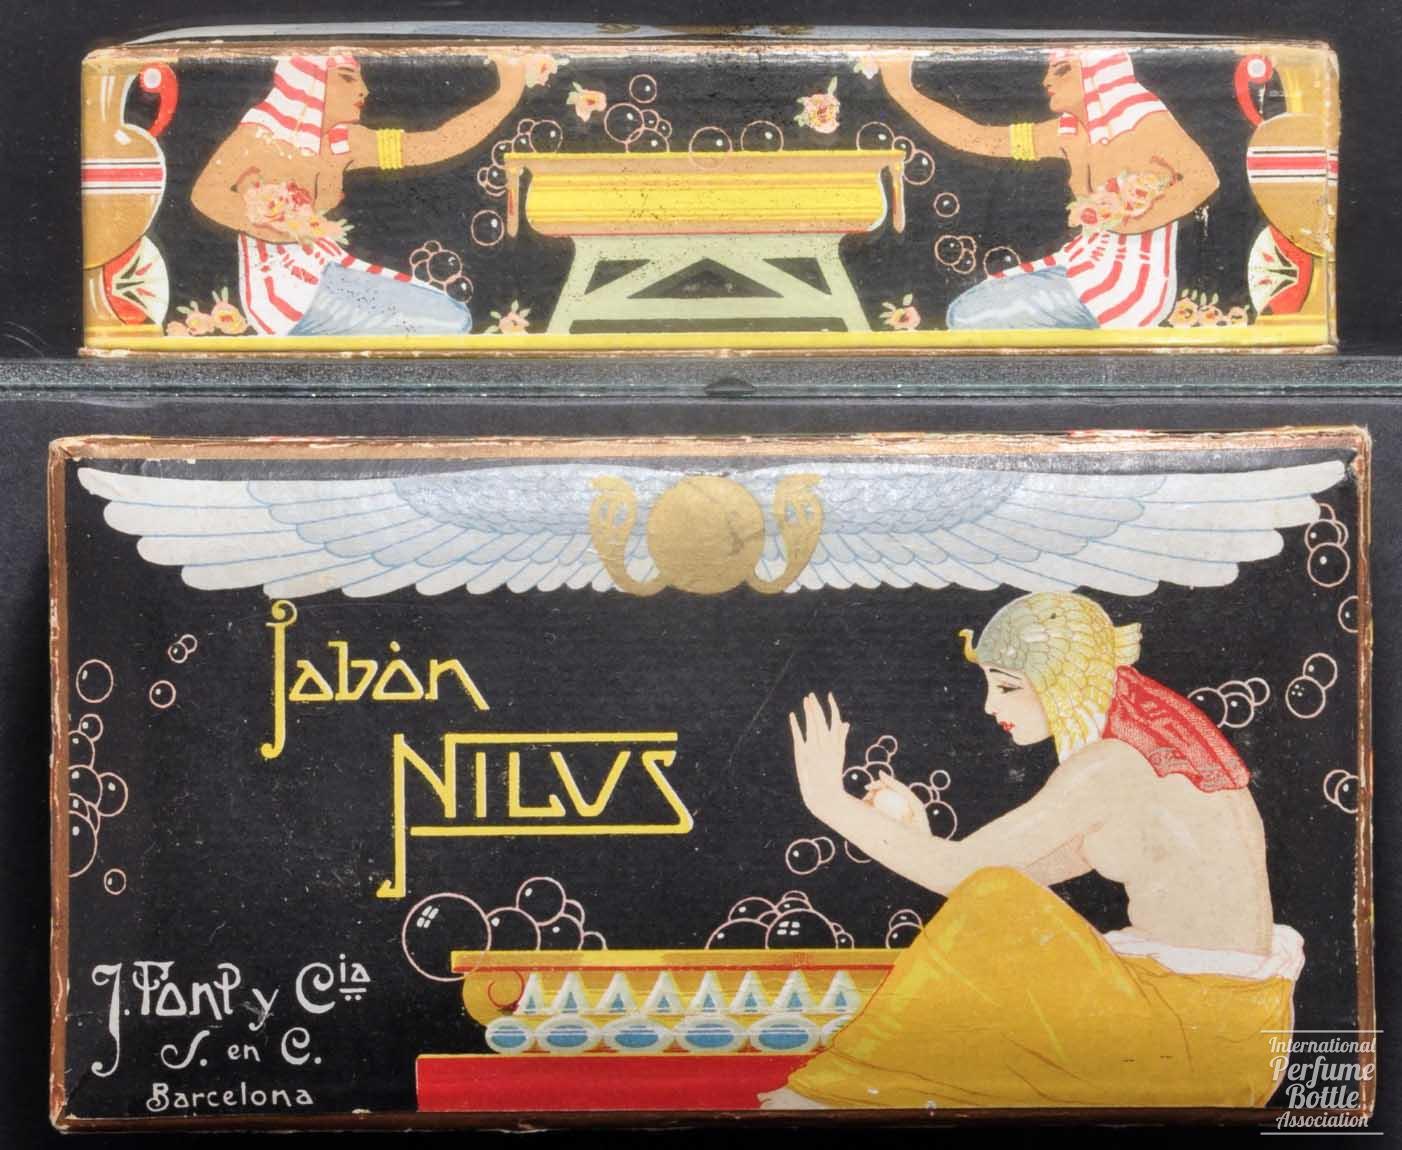 "Nilus" Soap Box by Font y Cía